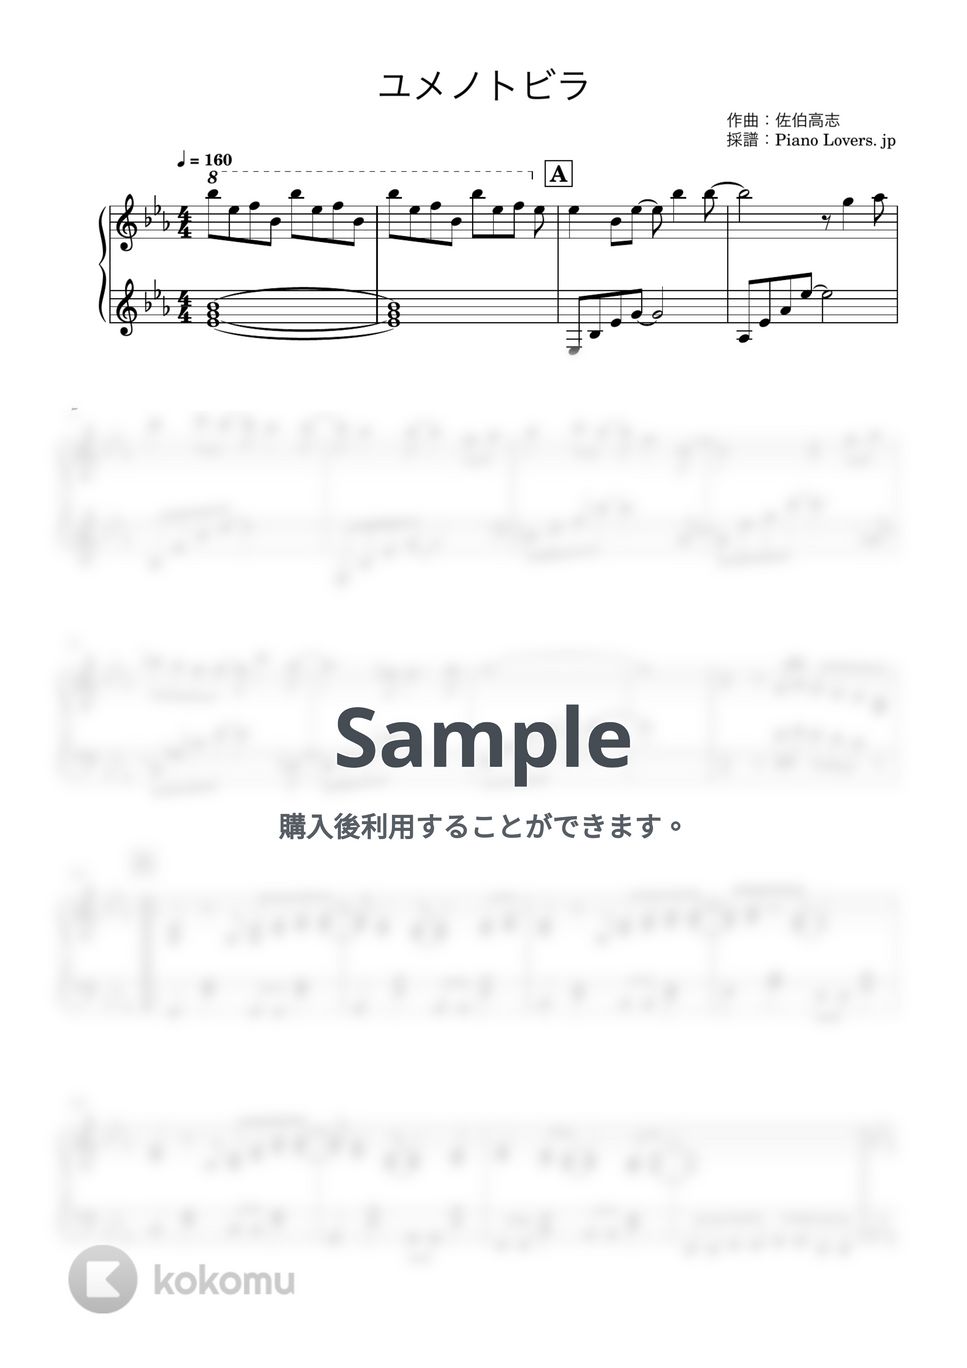 μ's - ユメノトビラ (ラブライブ!) by Piano Lovers. jp